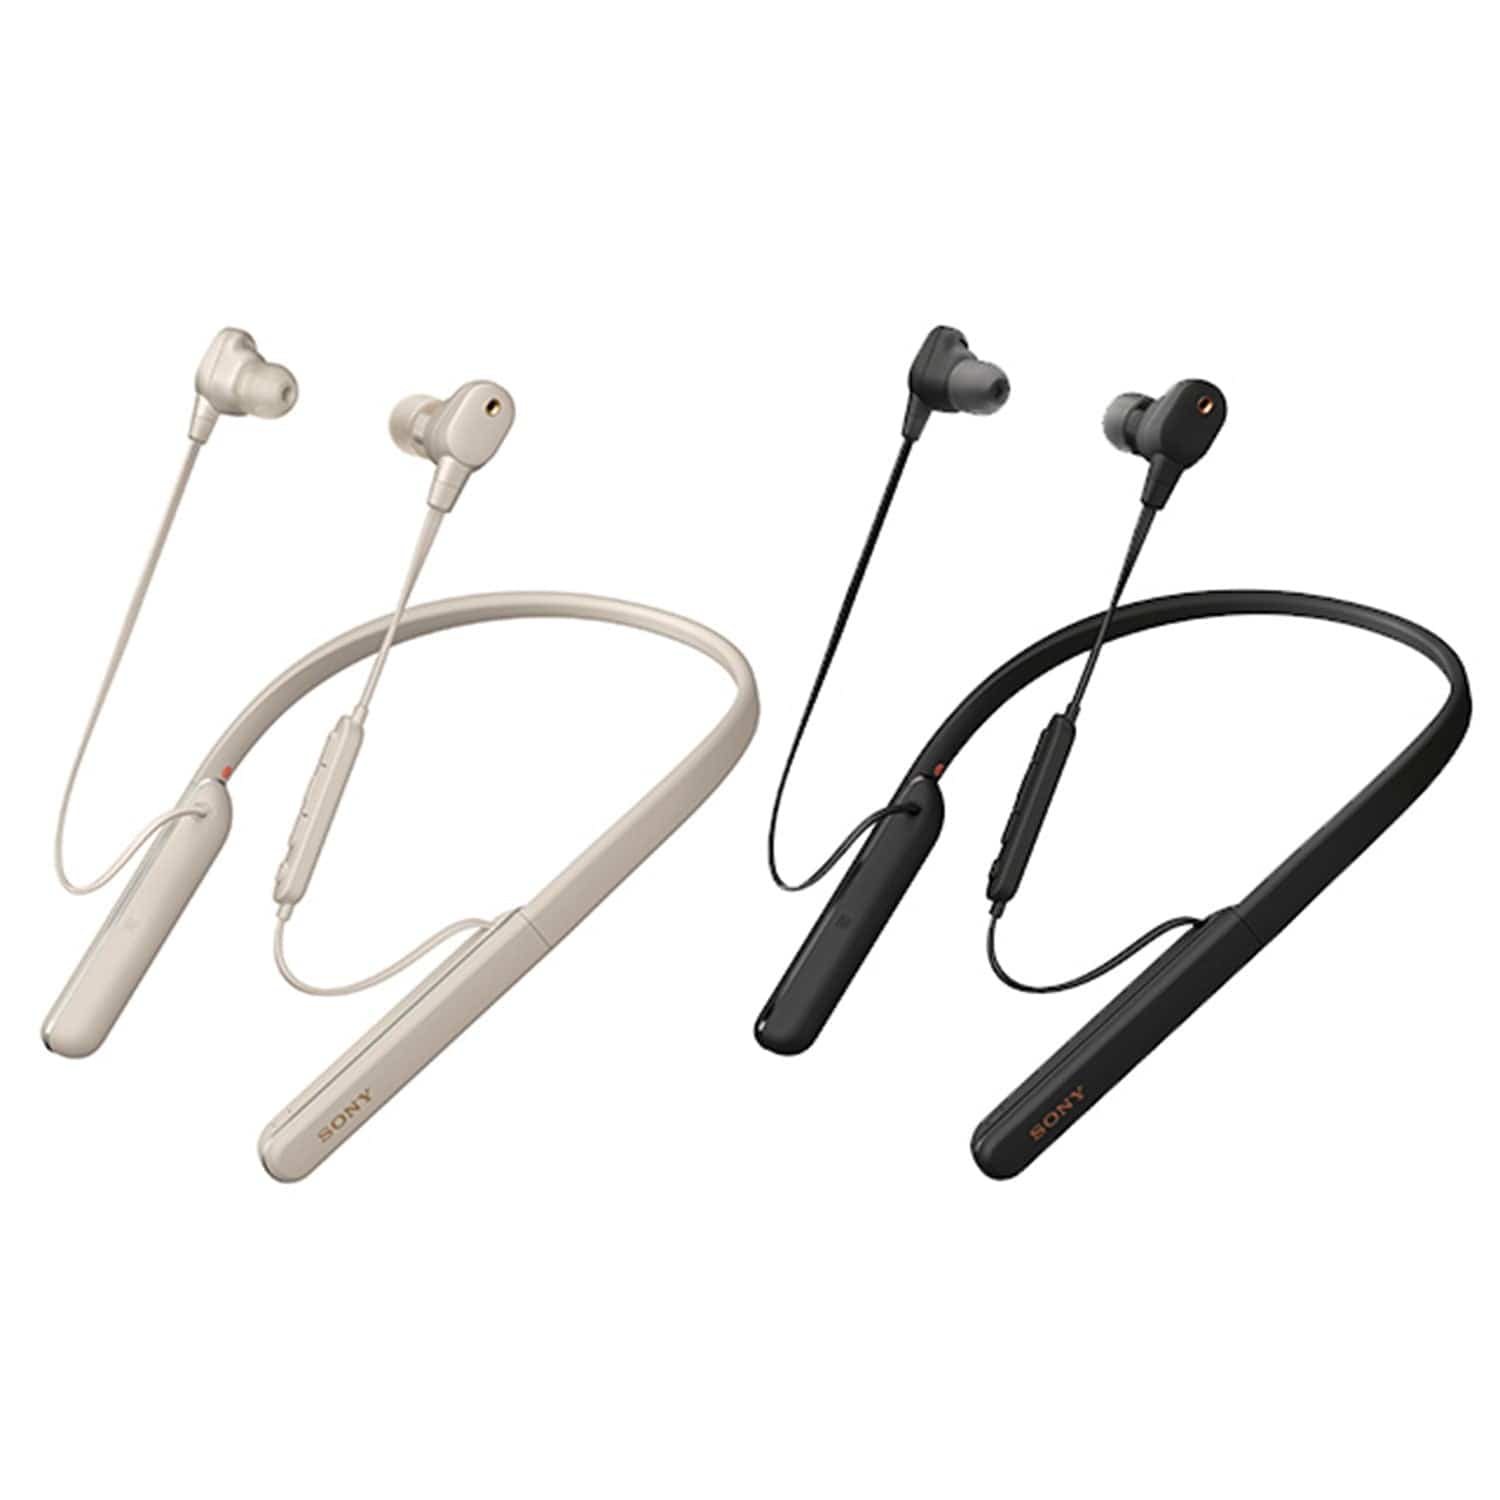 Sony WI-1000XM2 Wireless Noise Cancelling In-Ear Earphones